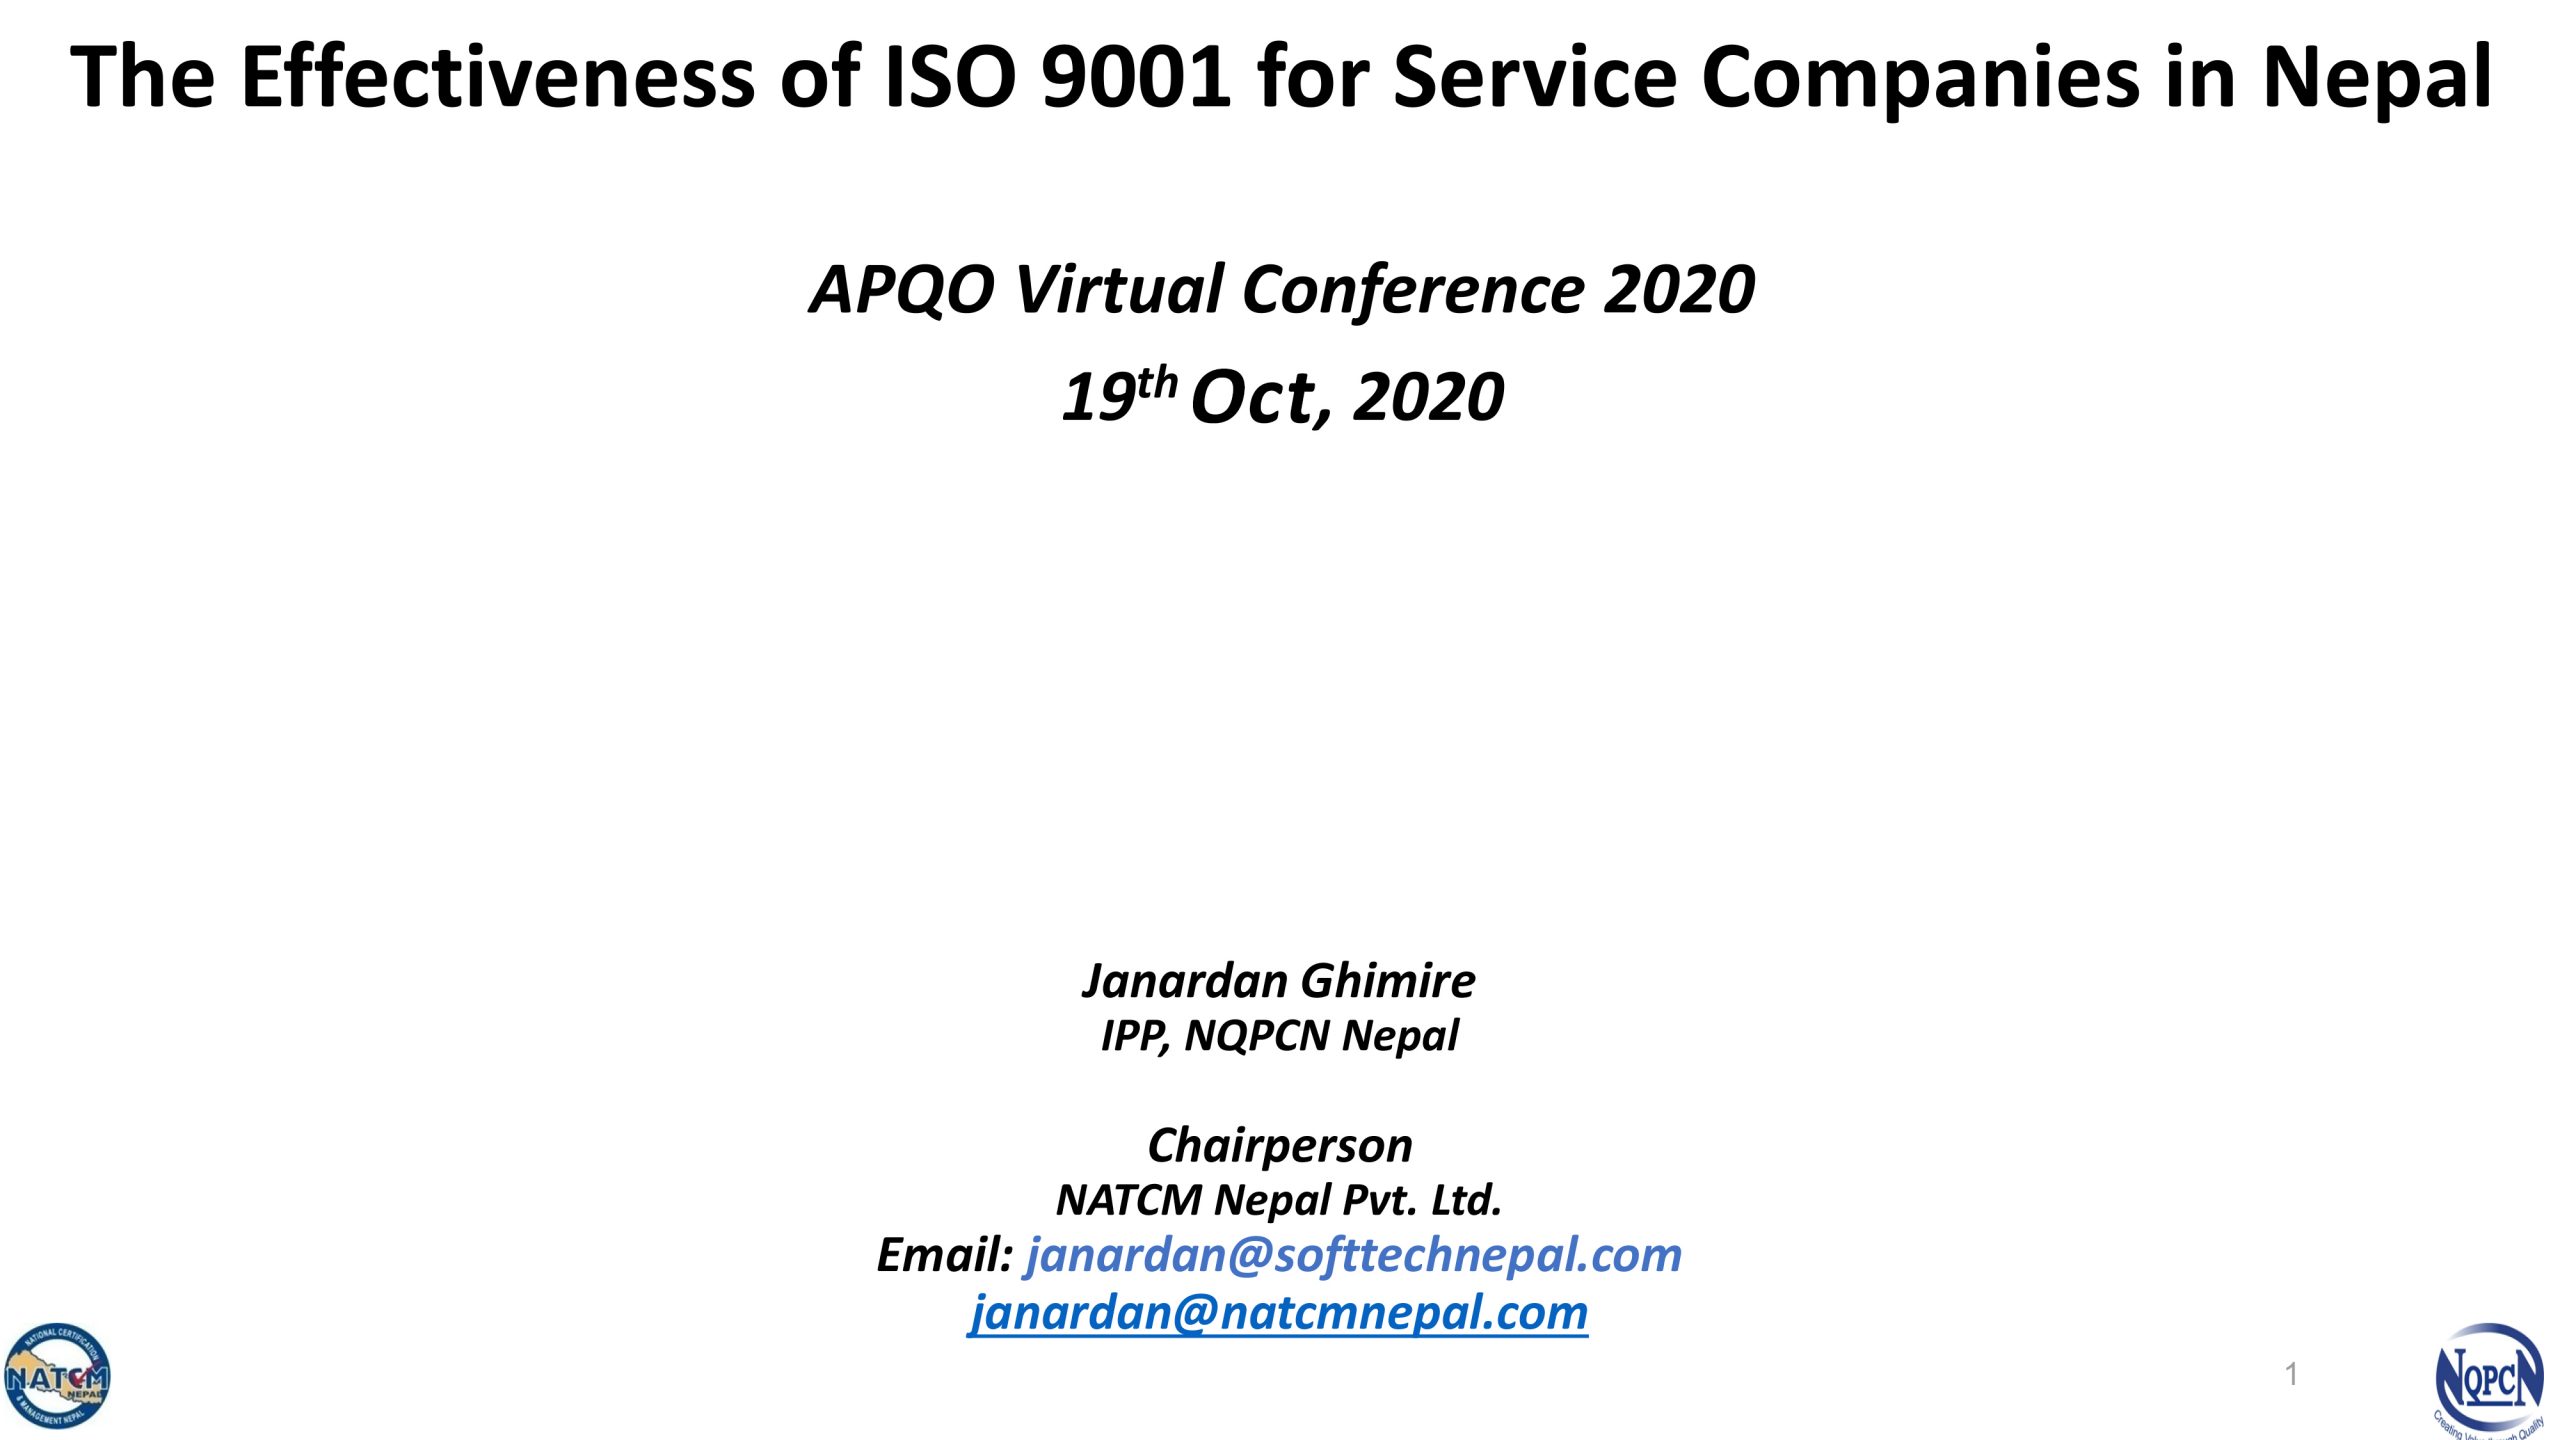 Effectiveness of ISO 9001, APQO